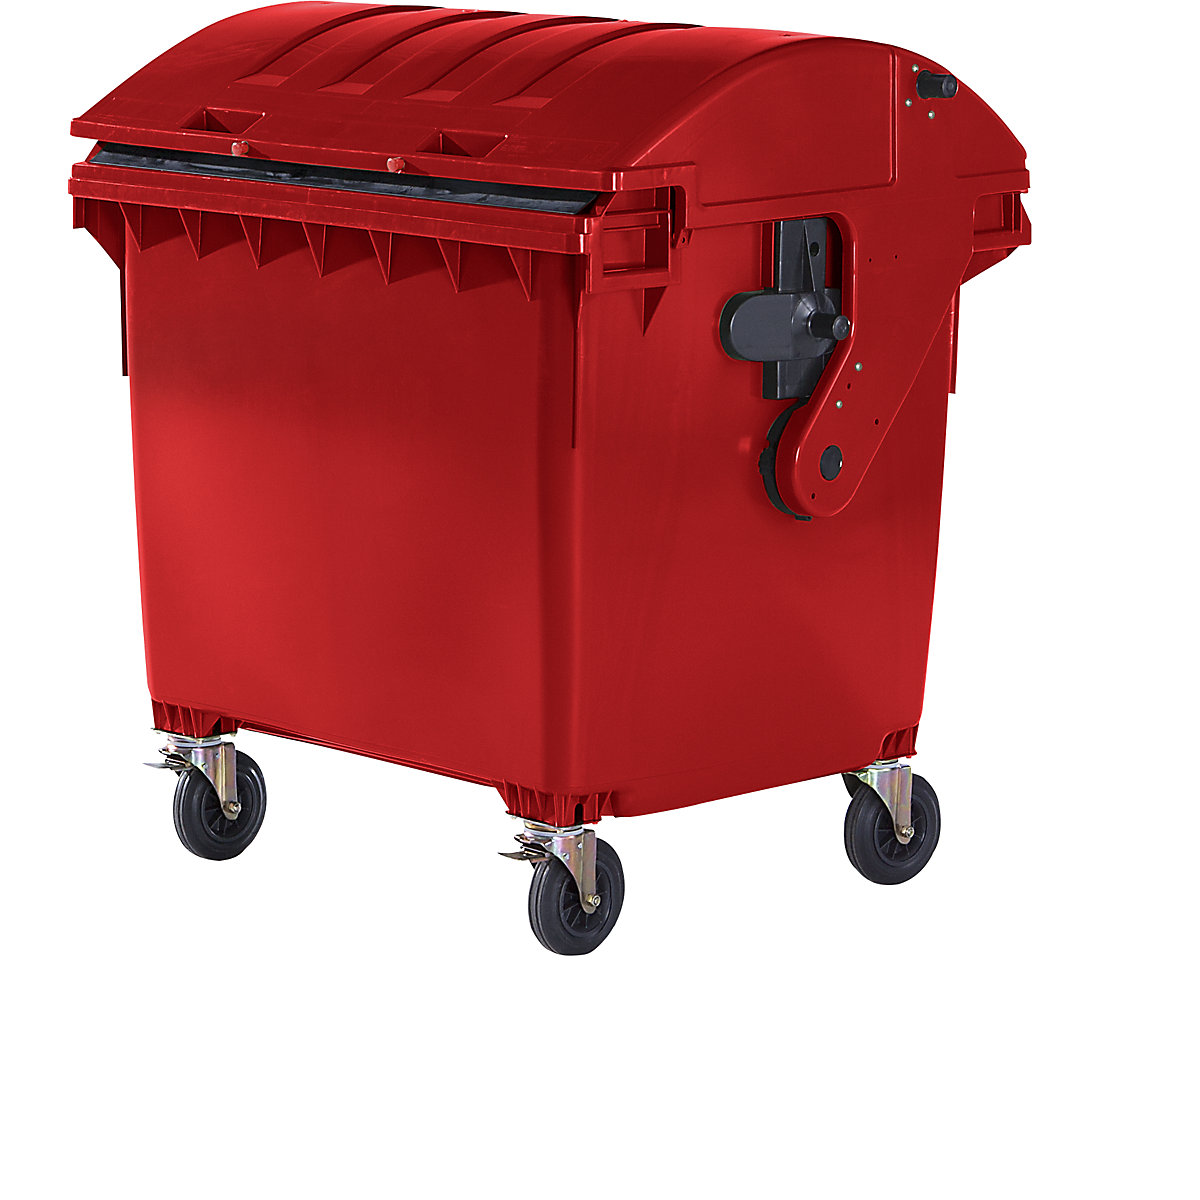 Contentor do lixo em plástico, DIN EN 840, volume 1100 l, LxAxP 1360 x 1465 x 1100 mm, tampa deslizante, proteção para crianças, vermelho-5